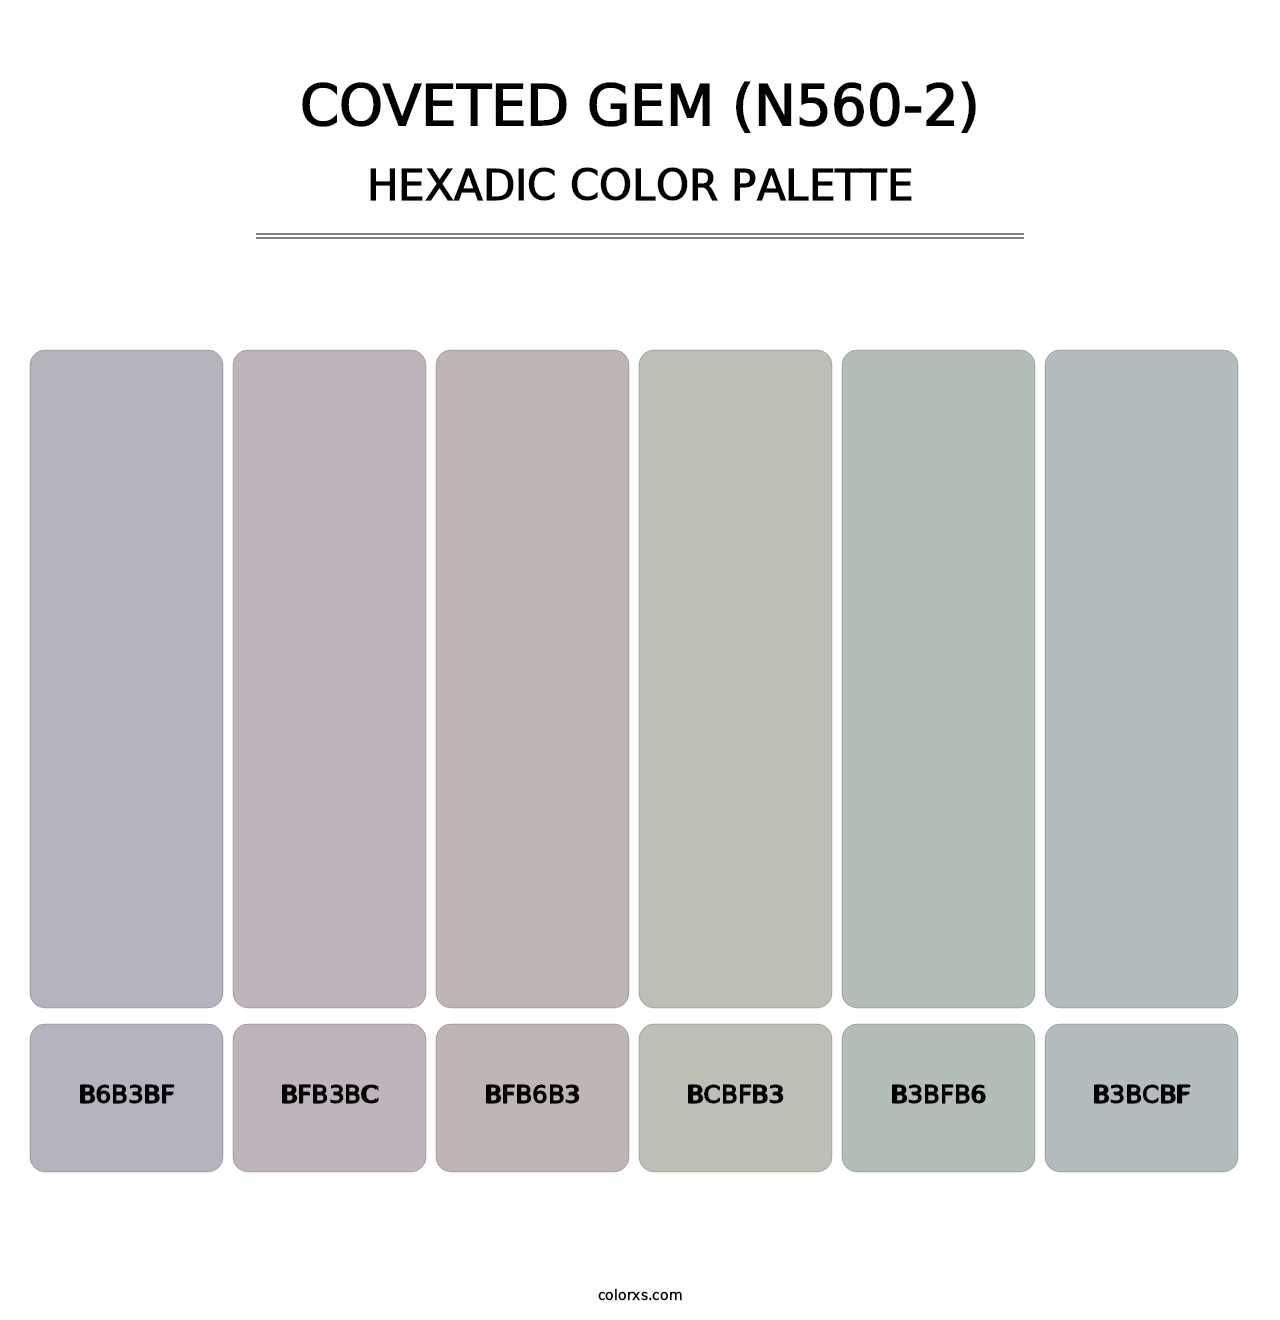 Coveted Gem (N560-2) - Hexadic Color Palette